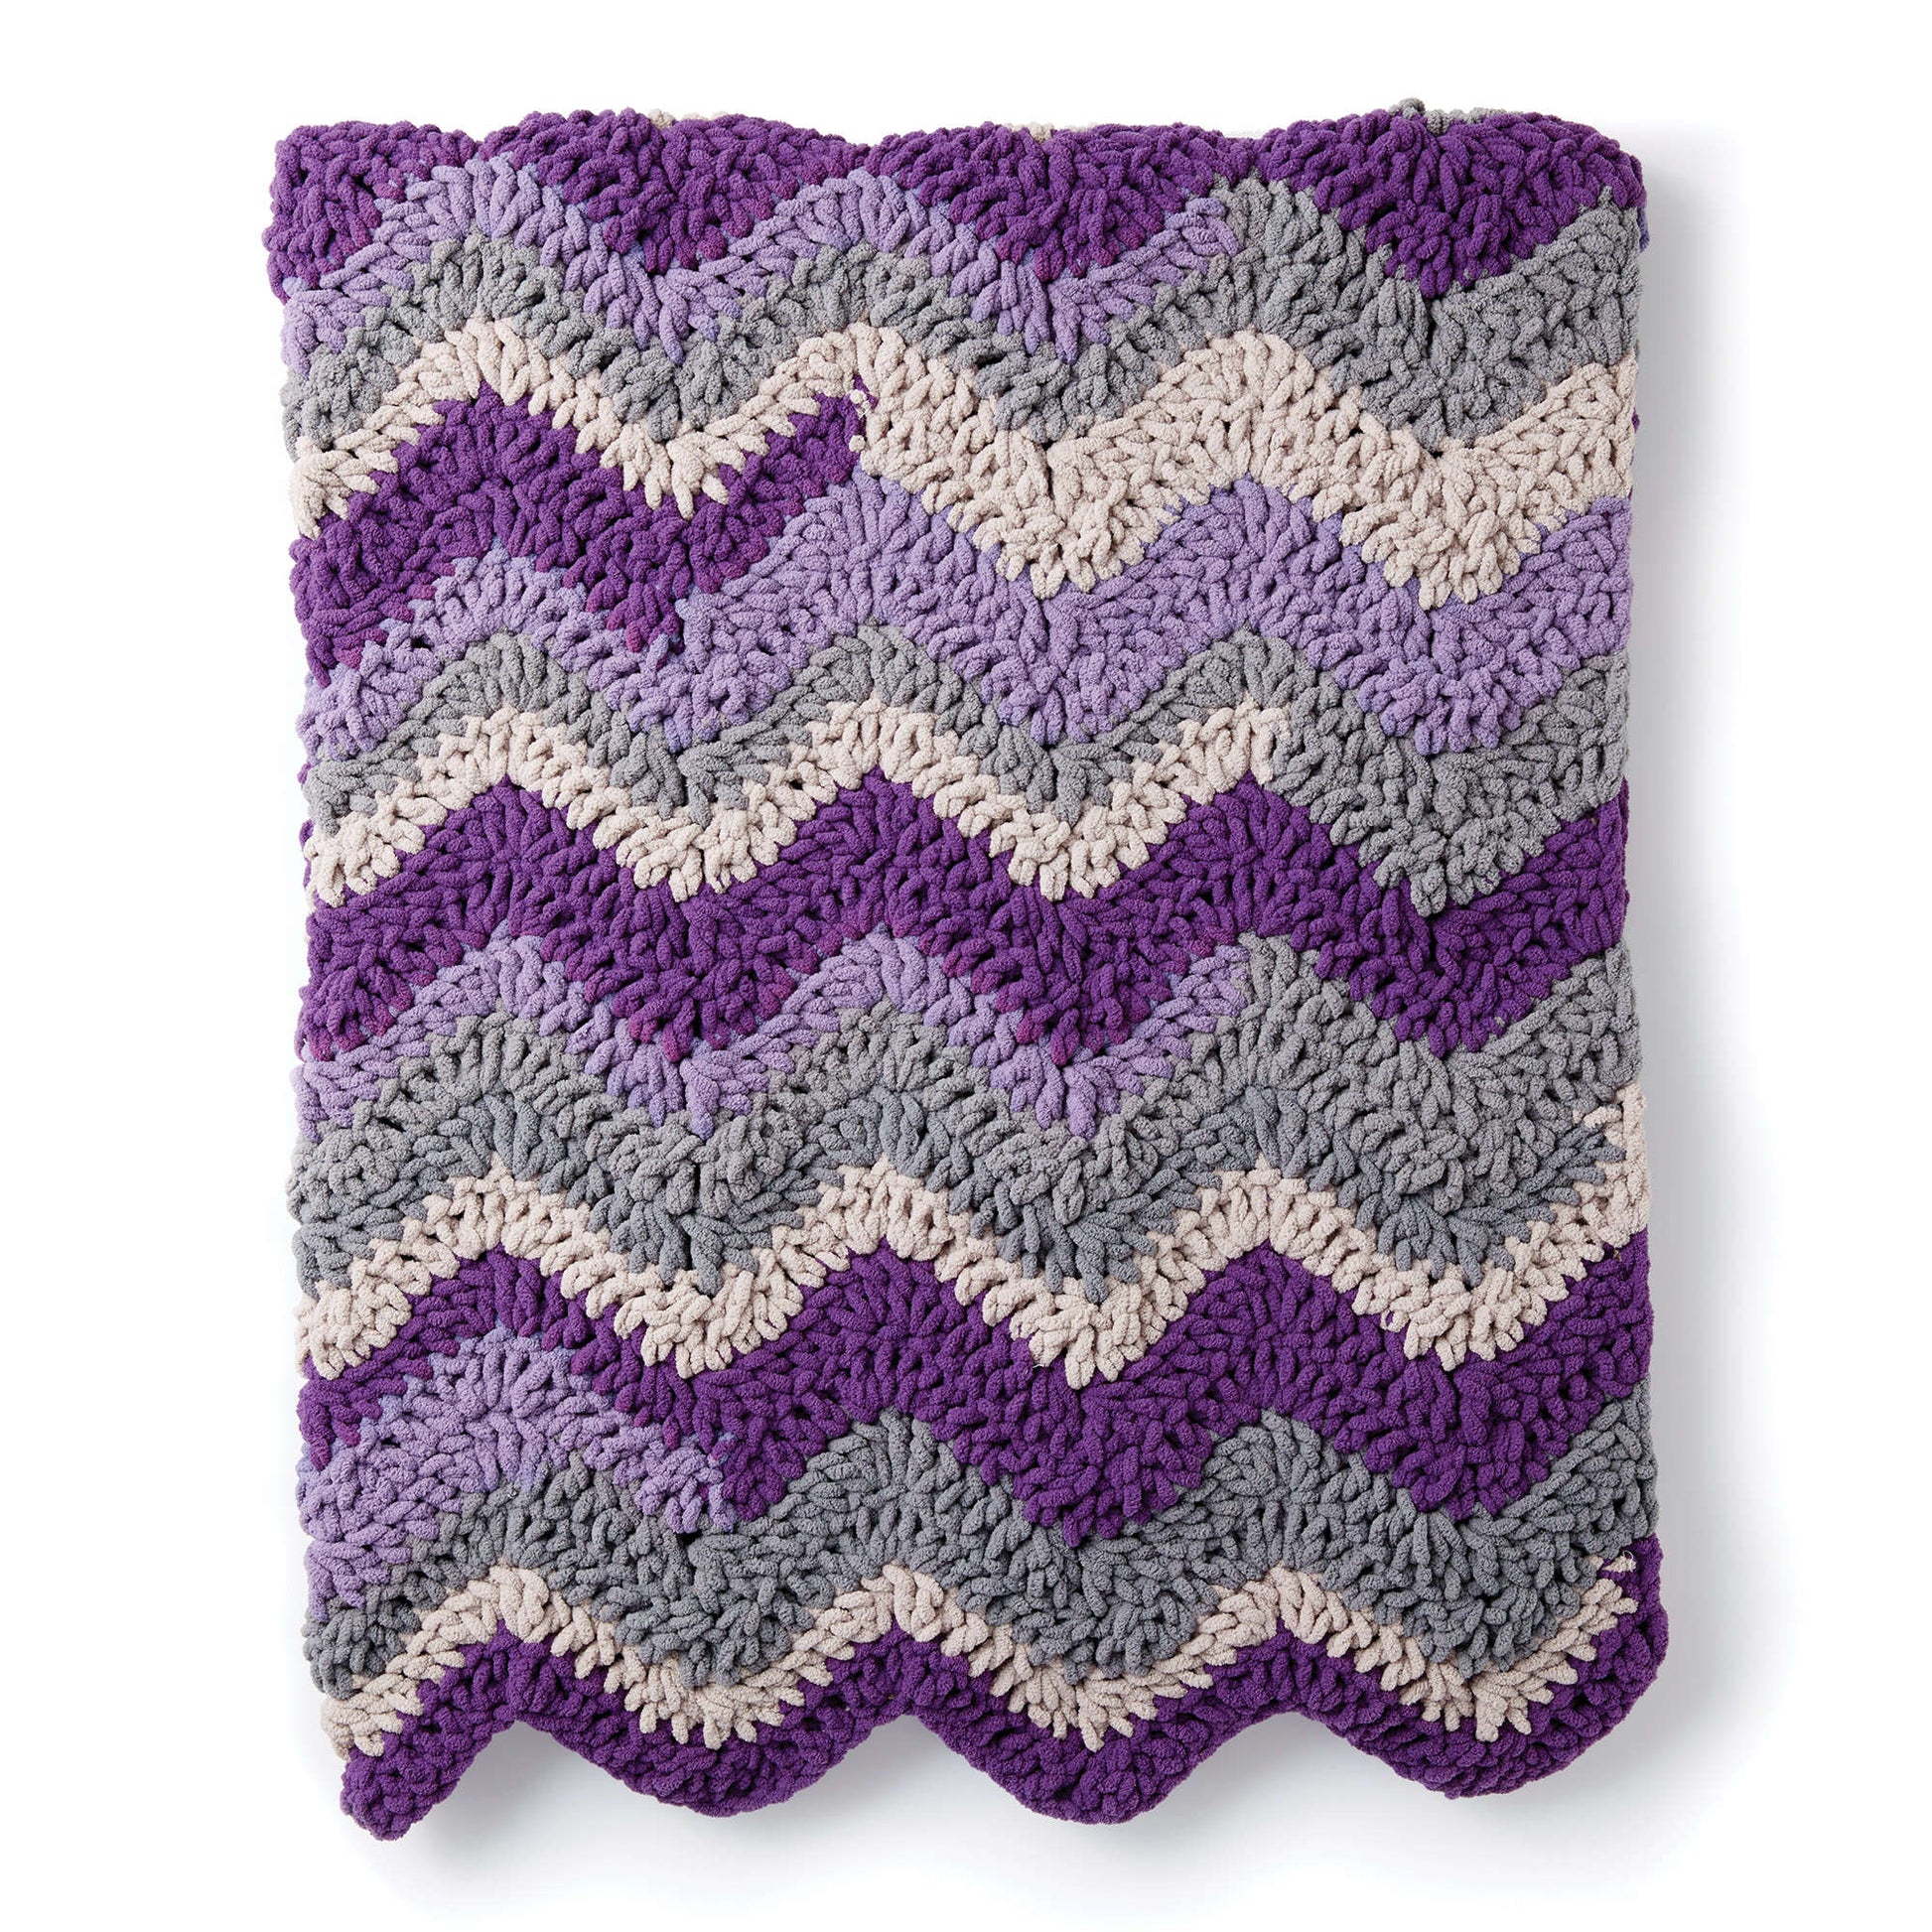 Bernat Forever Fleece Chevron Knit Blanket Pattern